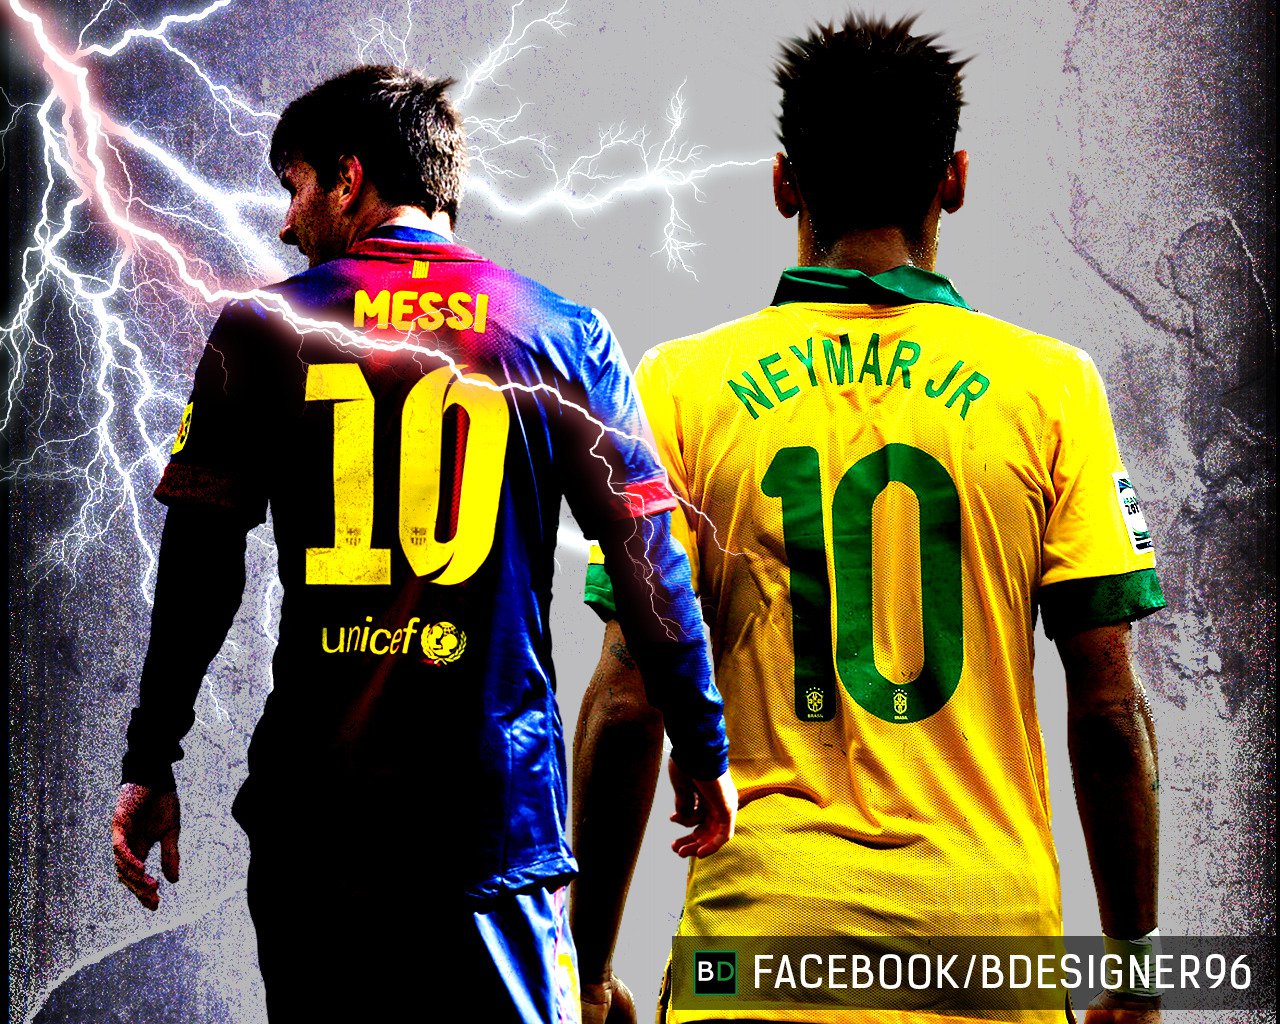 Messi và Neymar với sự kết hợp hoàn hảo mang lại những trận đấu mãn nhãn cho fan hâm mộ. Hãy cảm nhận sự đồng điệu và sáng tạo của hai siêu sao này bằng cách tải hình nền chất lượng cao trên điện thoại hoặc máy tính của bạn.